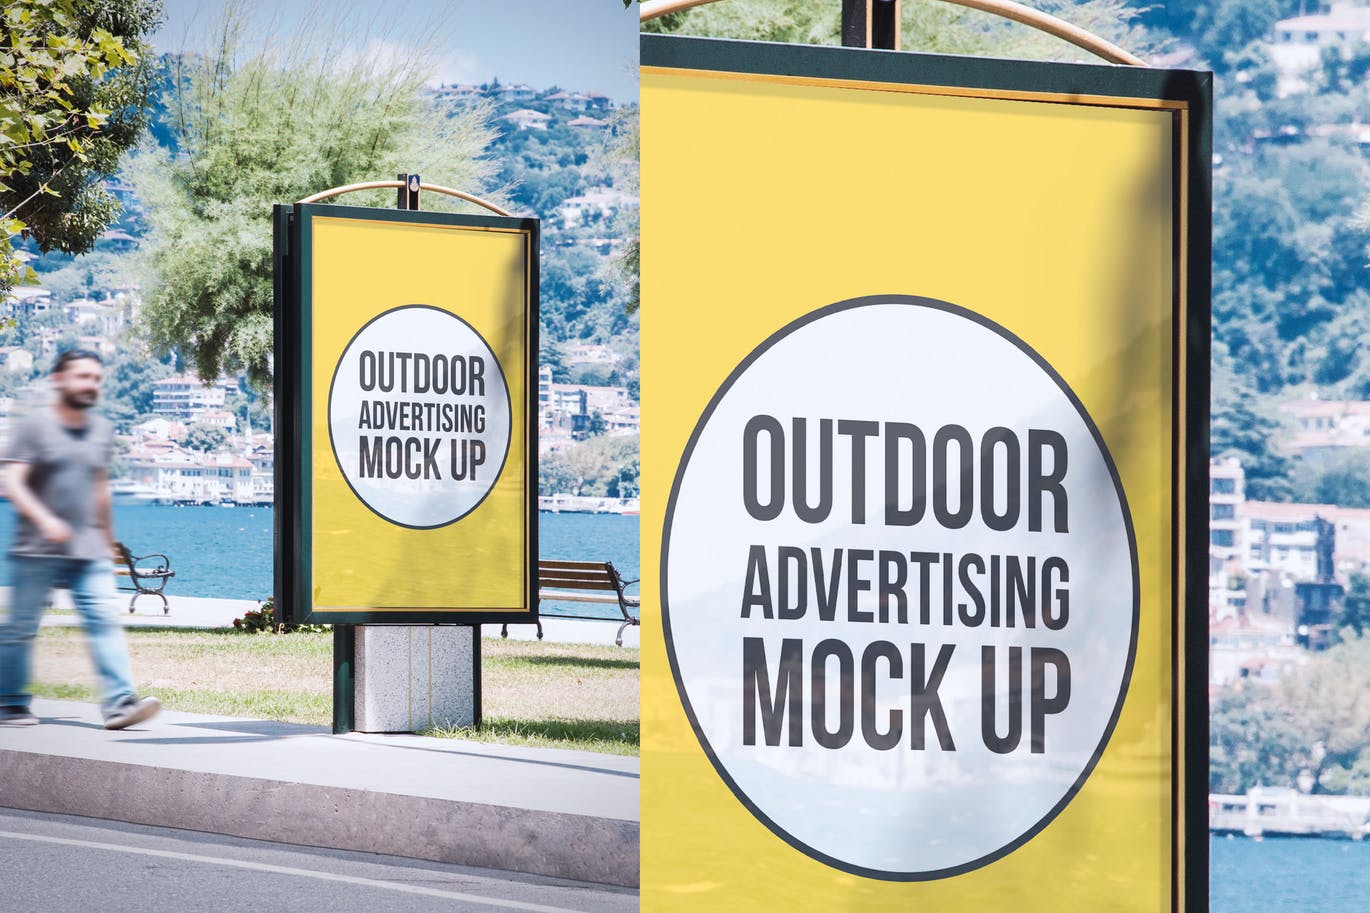 公园灯箱广告牌广告预览样机模板#11 Outdoor Advertisement Mockup Template #11插图